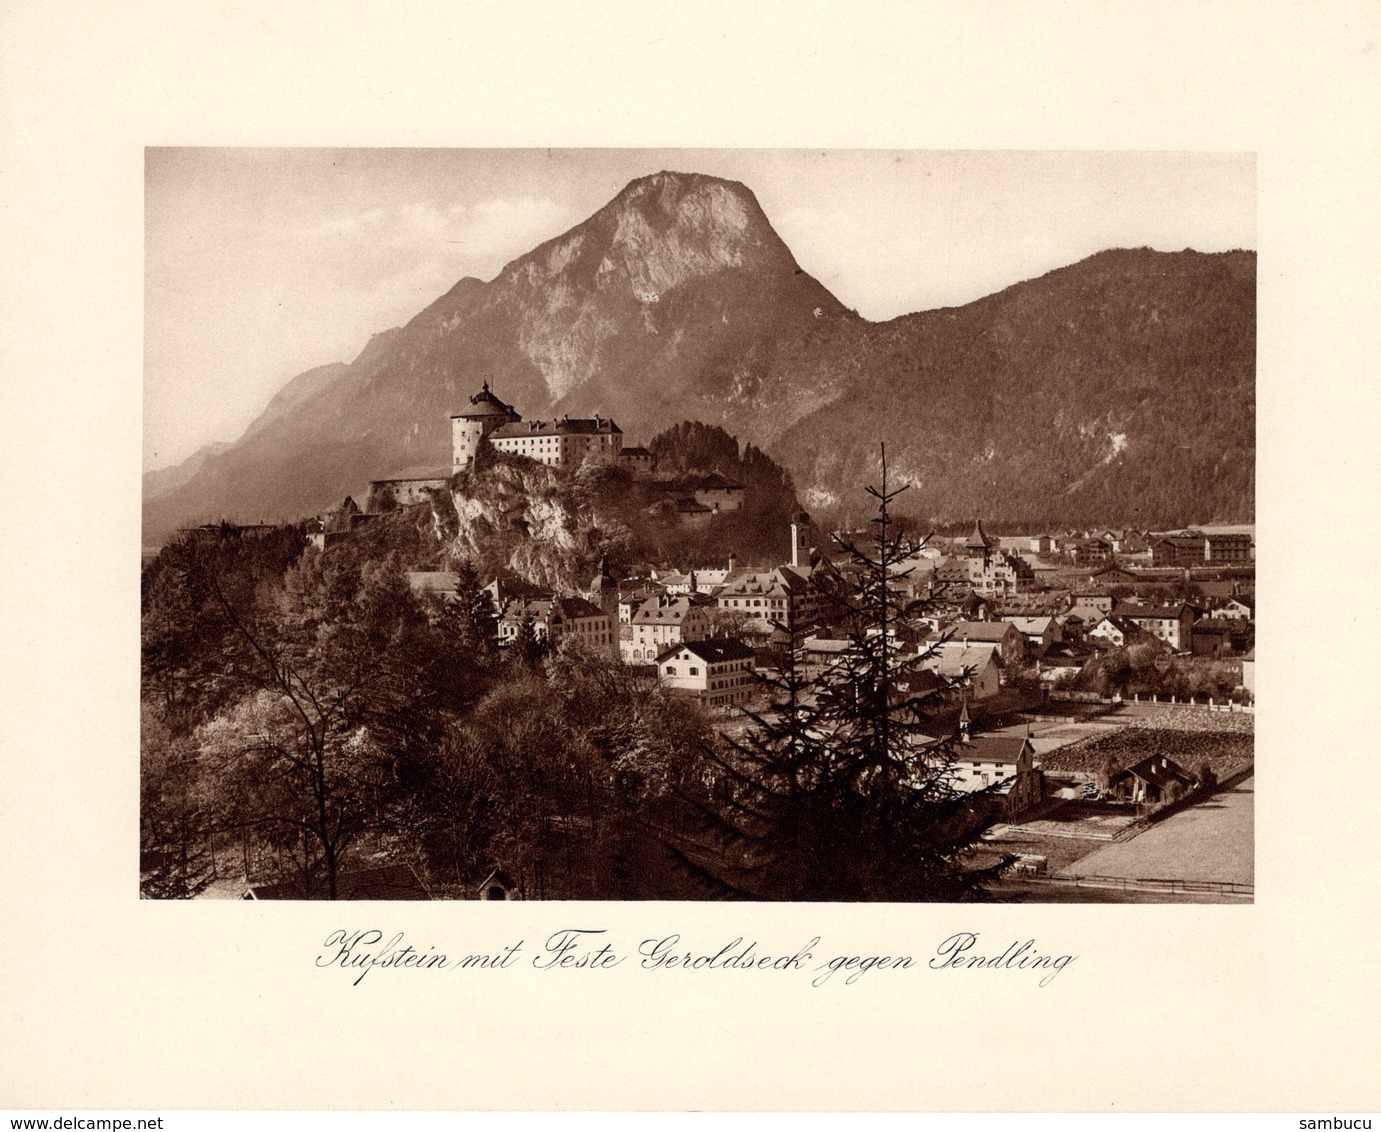 Kufstein Mit Feste Geroldseck Gegen Pendling - Kupfertiefdruck Ca 1910-20 - Stiche & Gravuren